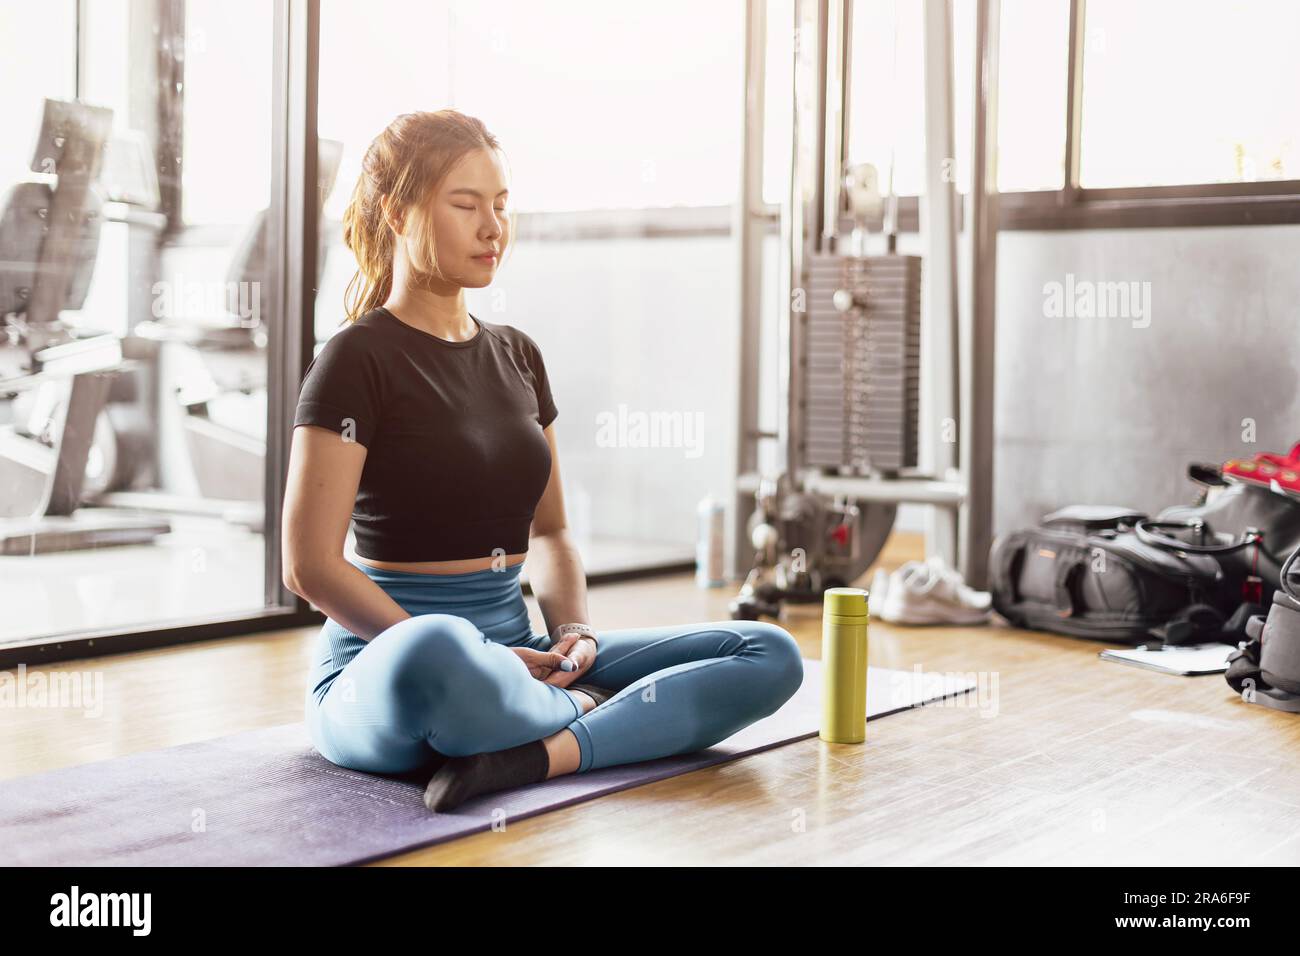 Junge asiatische Frau, die Yoga praktiziert, sitzt in Meditationsübungen, Ruhe, Ruhe, Entspannung, posieren, trainieren in Sportbekleidung, Meditationssitzung im Hallensport Stockfoto